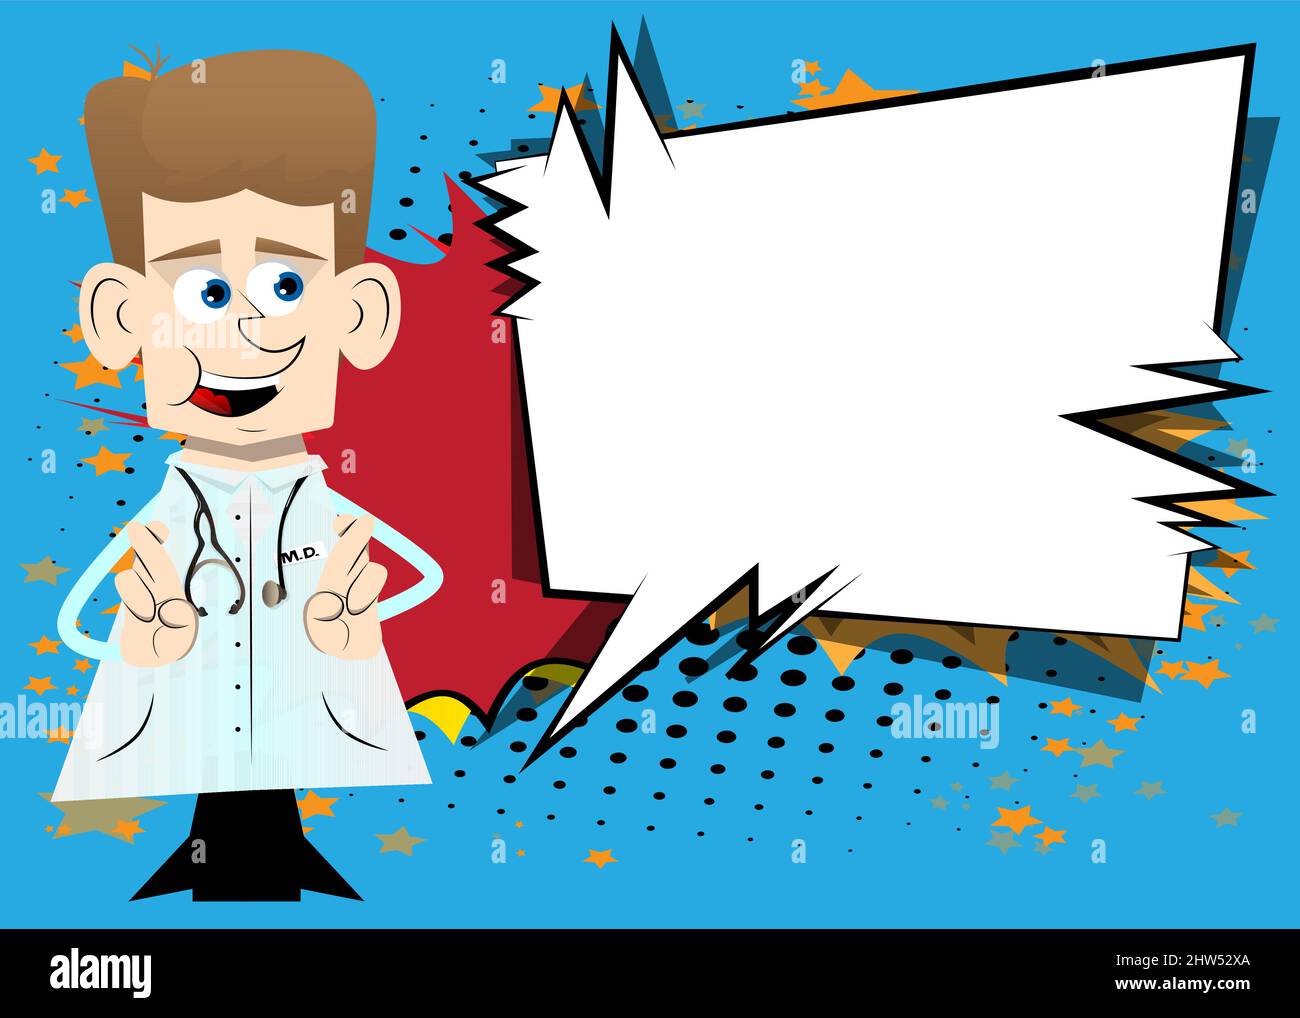 Lustige Cartoon-Arzt kreuzt seine Finger und wünscht sich Viel Glück. Vektorgrafik. Stock Vektor